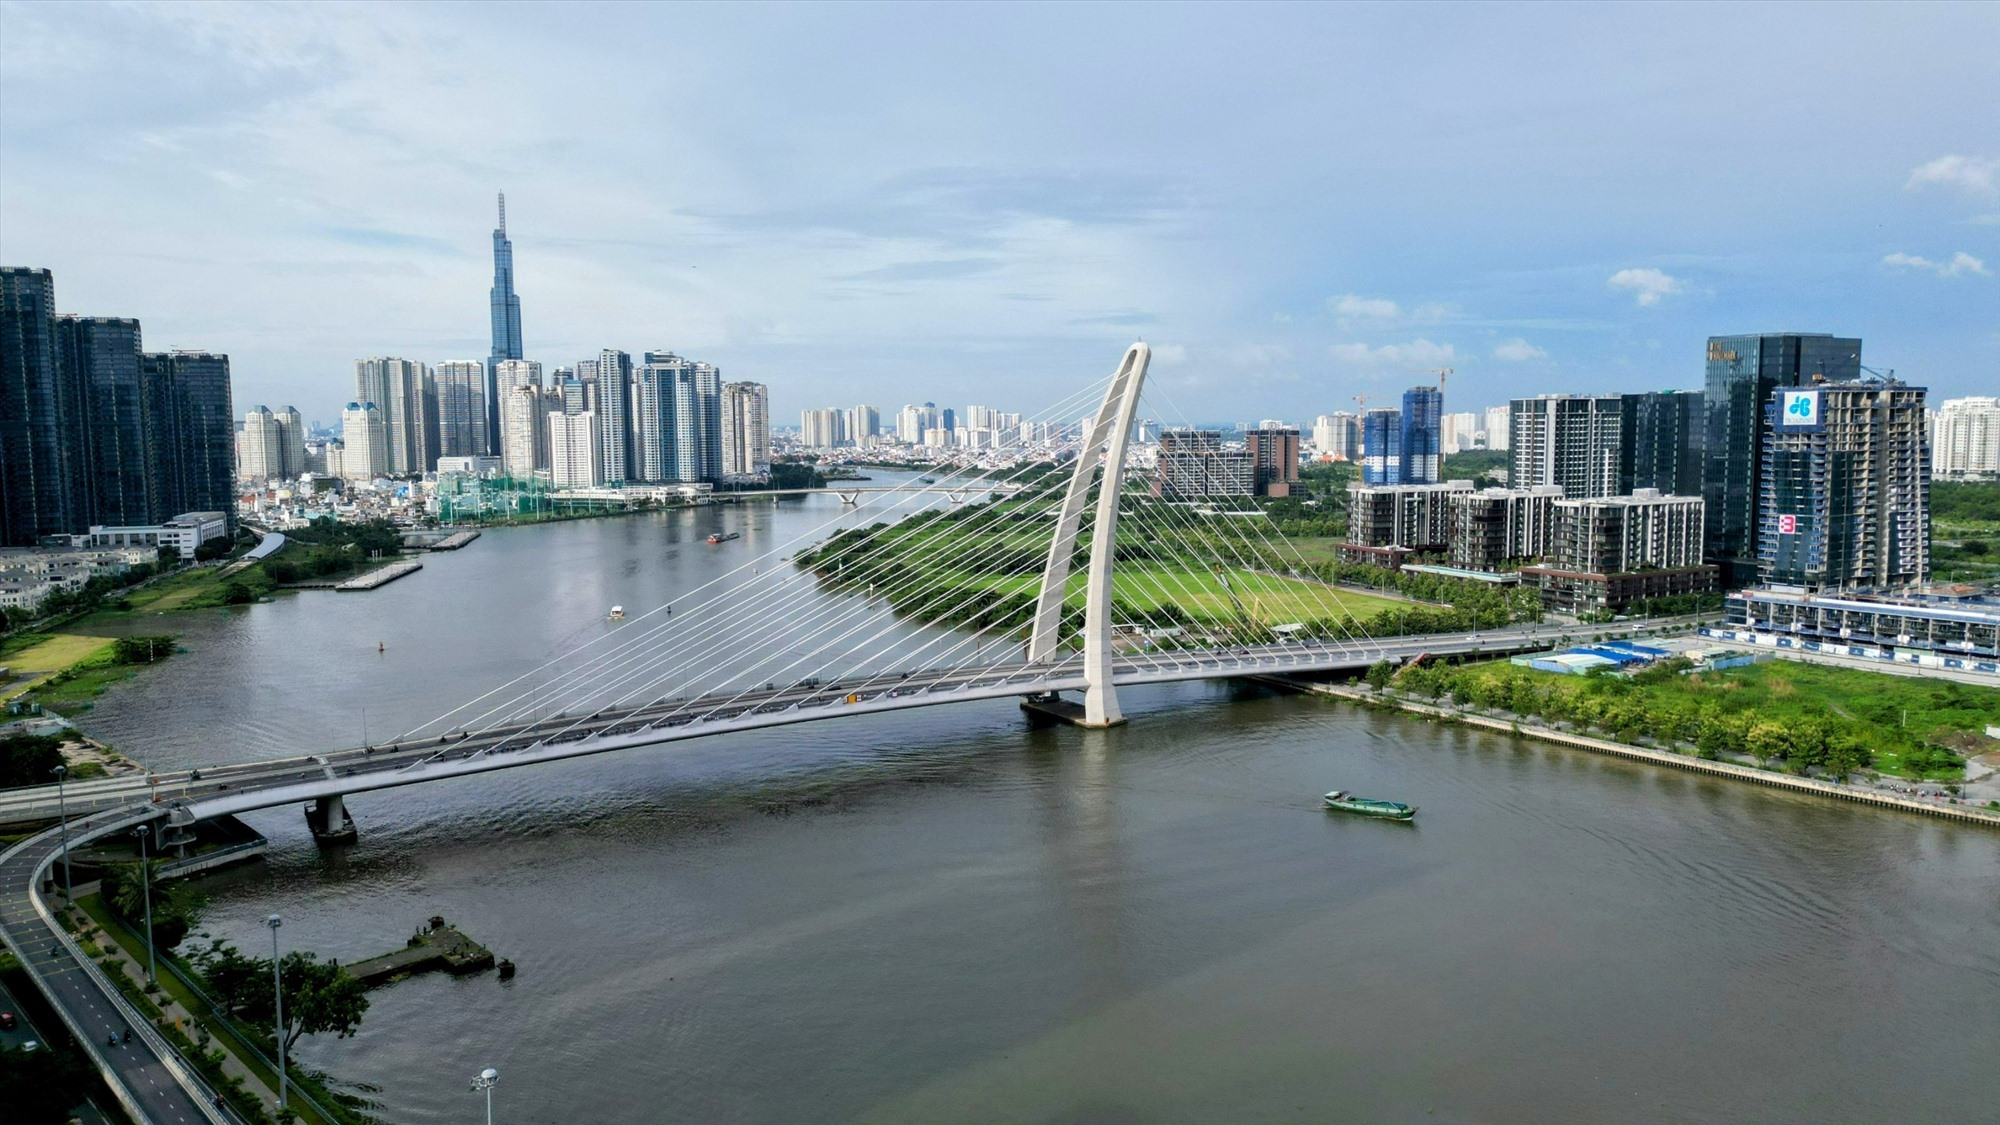 Cầu Ba Son được xem là biểu tượng kiến trúc của TPHCM, khánh thành thông xe cách đây hơn một năm. Cây cầu dây văng với kiến trúc đẹp được đầu tư với 3.100 tỉ đồng. Ảnh: Anh Tú